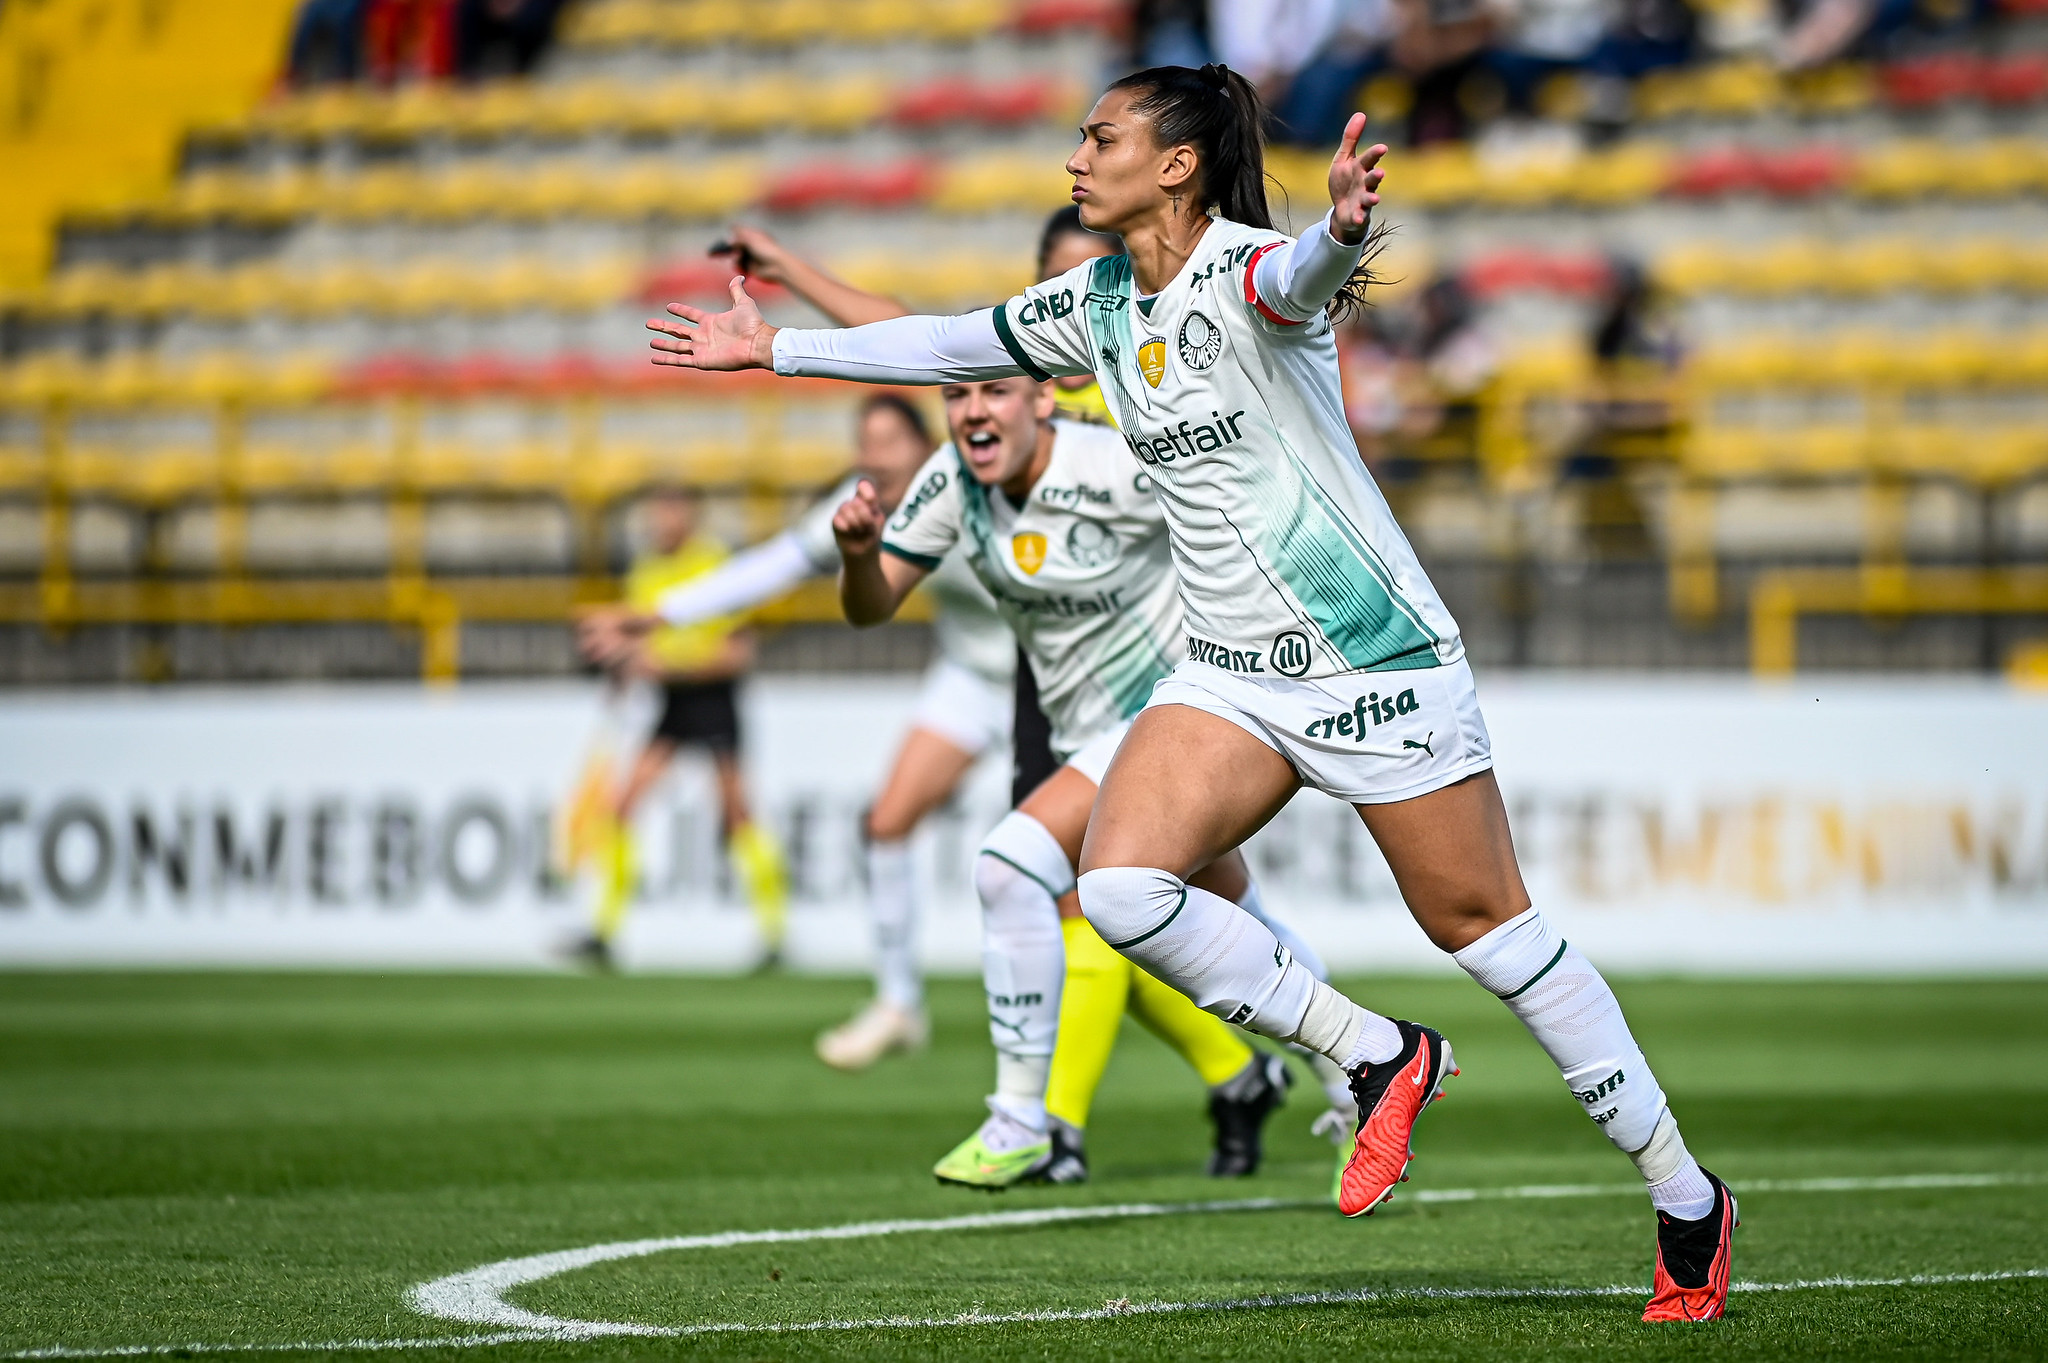 Com 100% de aproveitamento na primeira fase, Palmeiras avança para o mata-mata da Libertadores Feminina, (Foto: Staff images Woman/CONMEBOL)